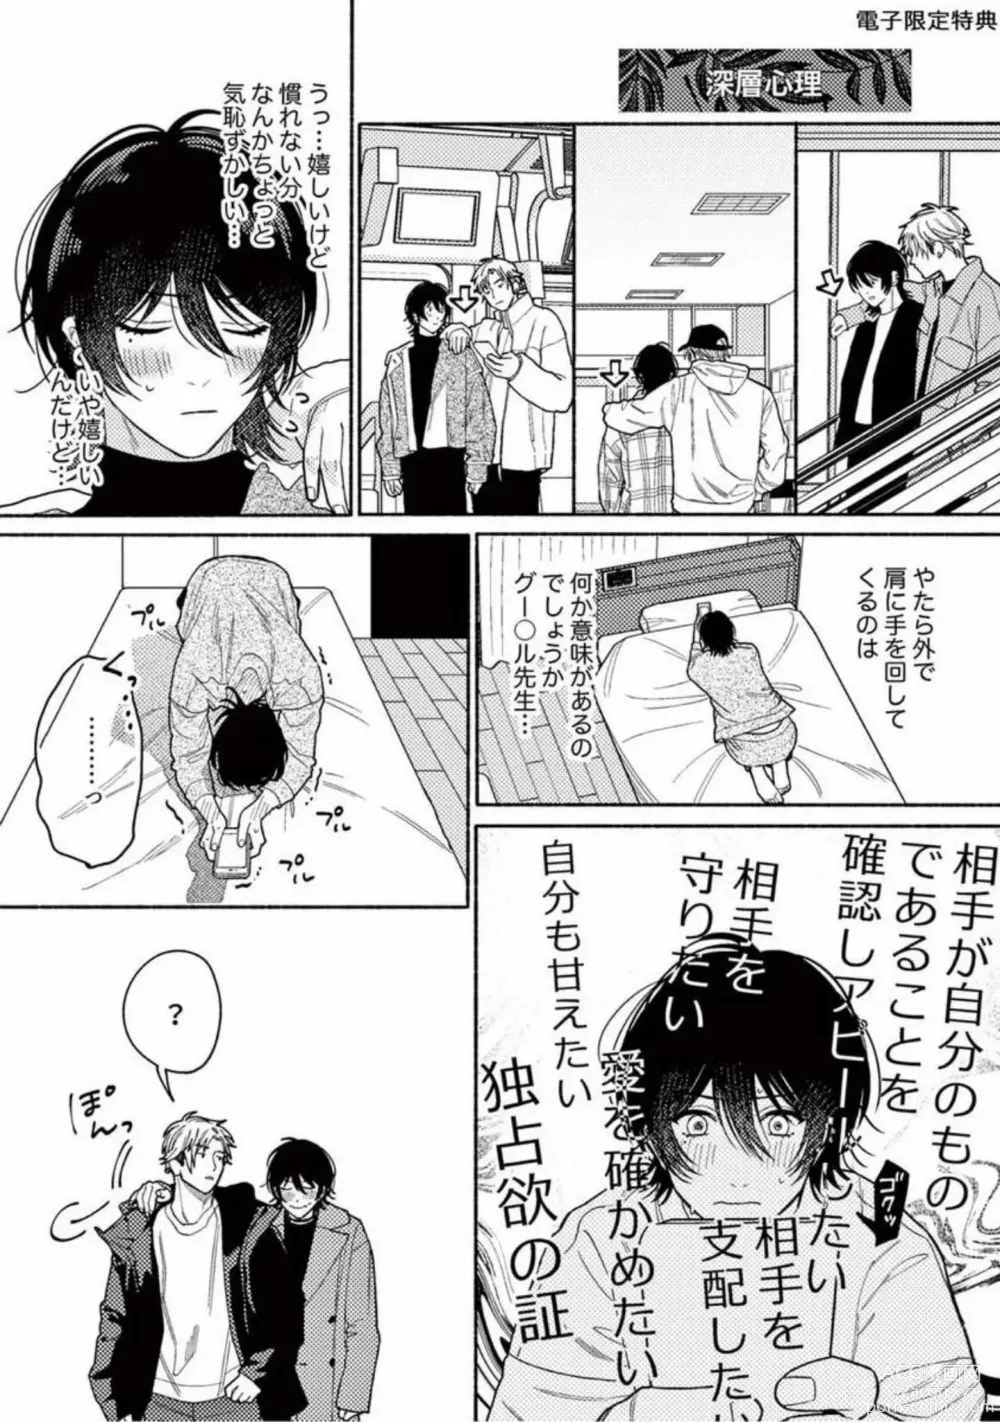 Page 203 of manga Junjou de Nani ga Warui - Whats wrong with being innocent?